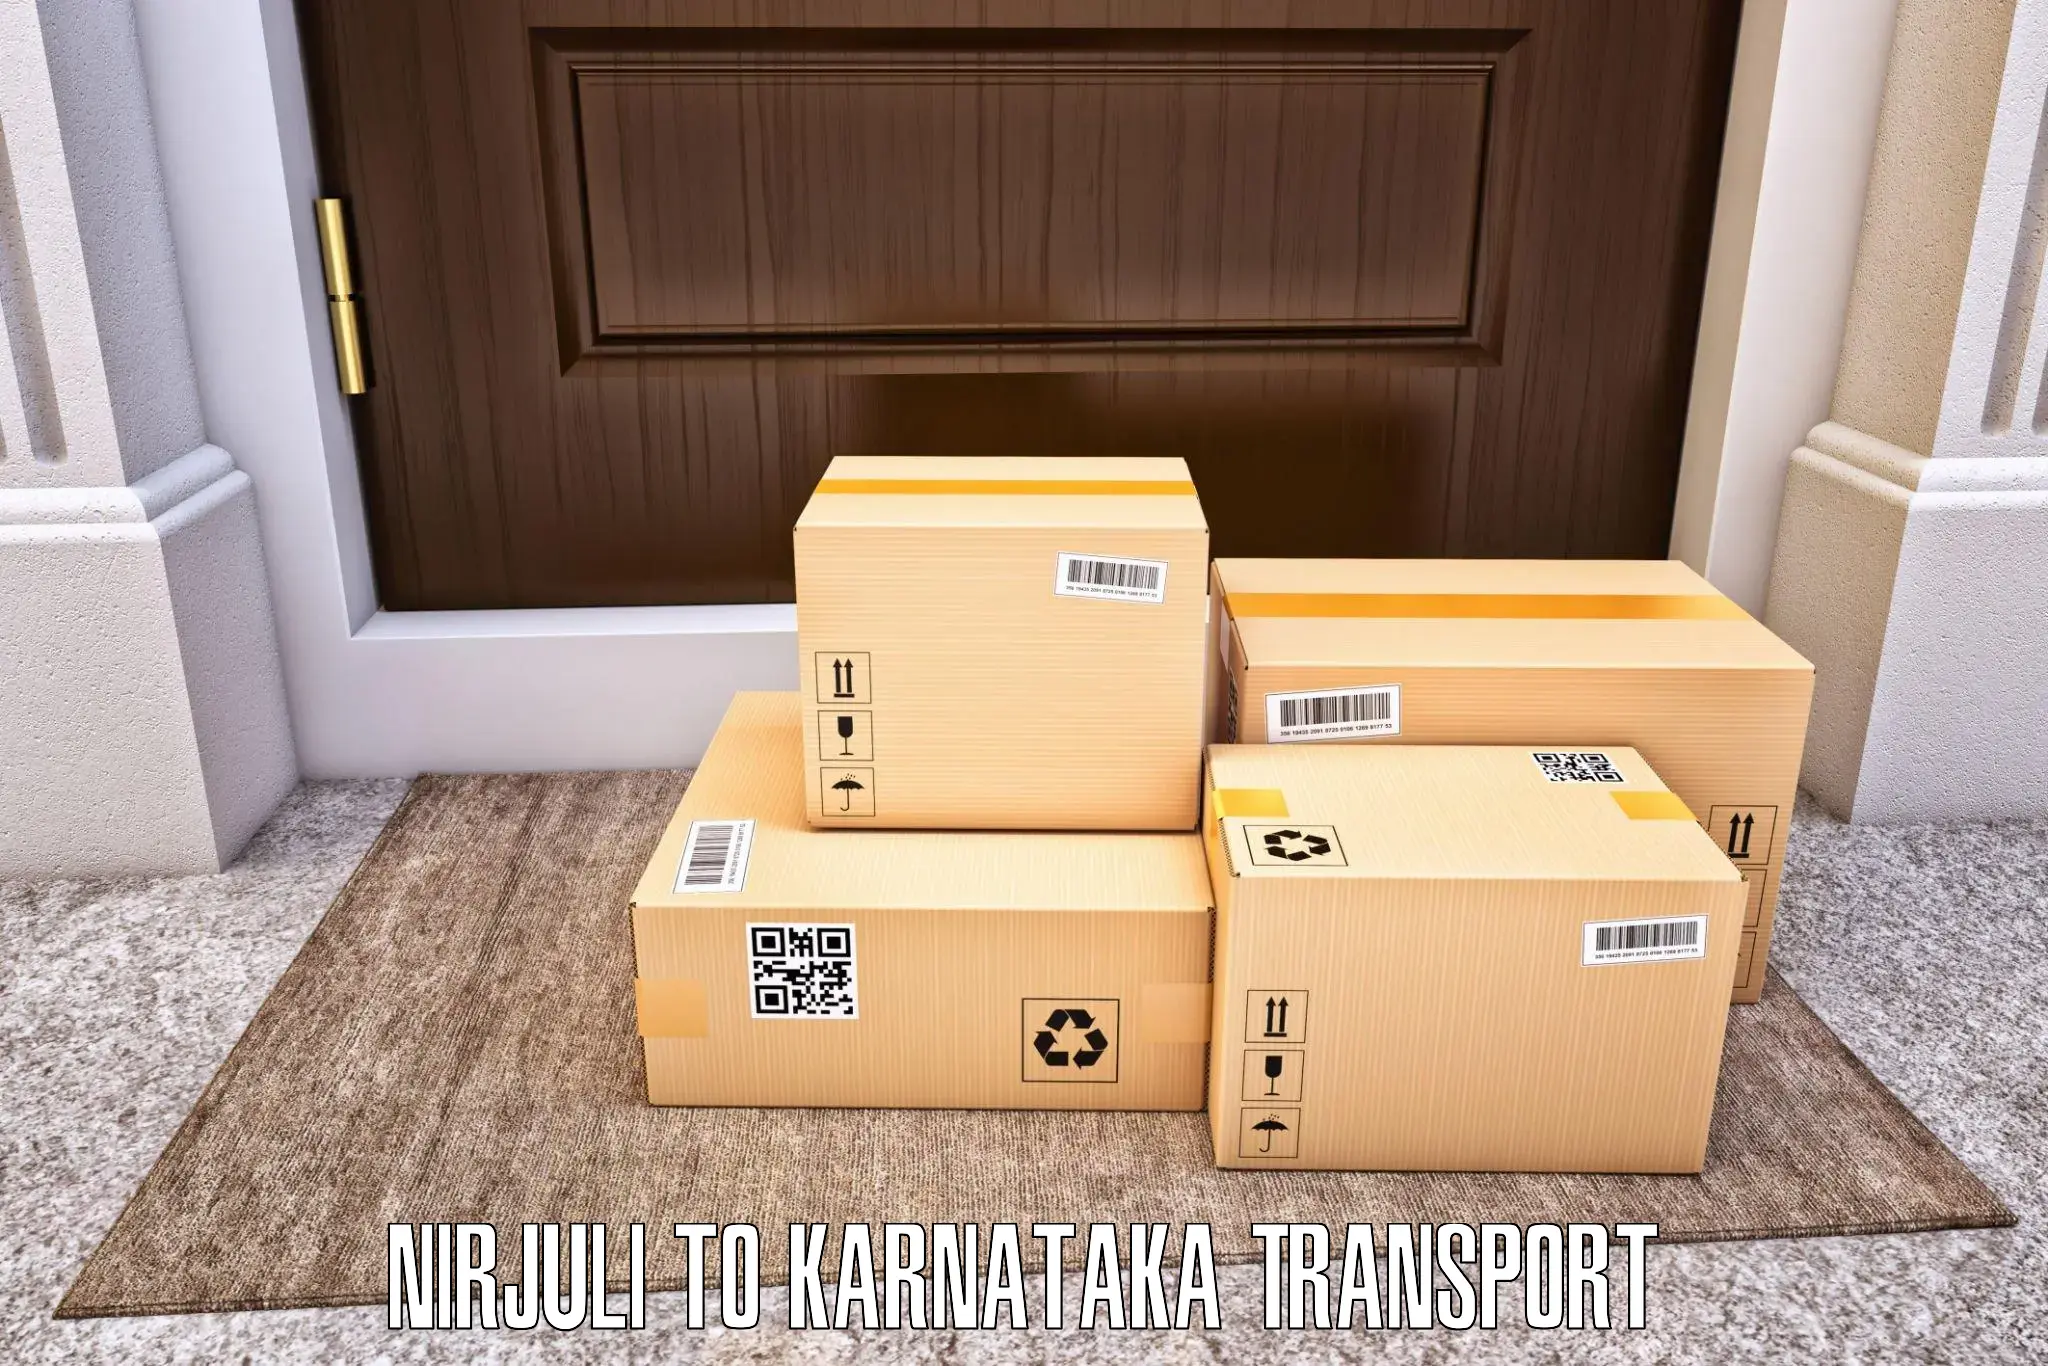 Cargo transport services Nirjuli to Tirumakudalu Narasipura